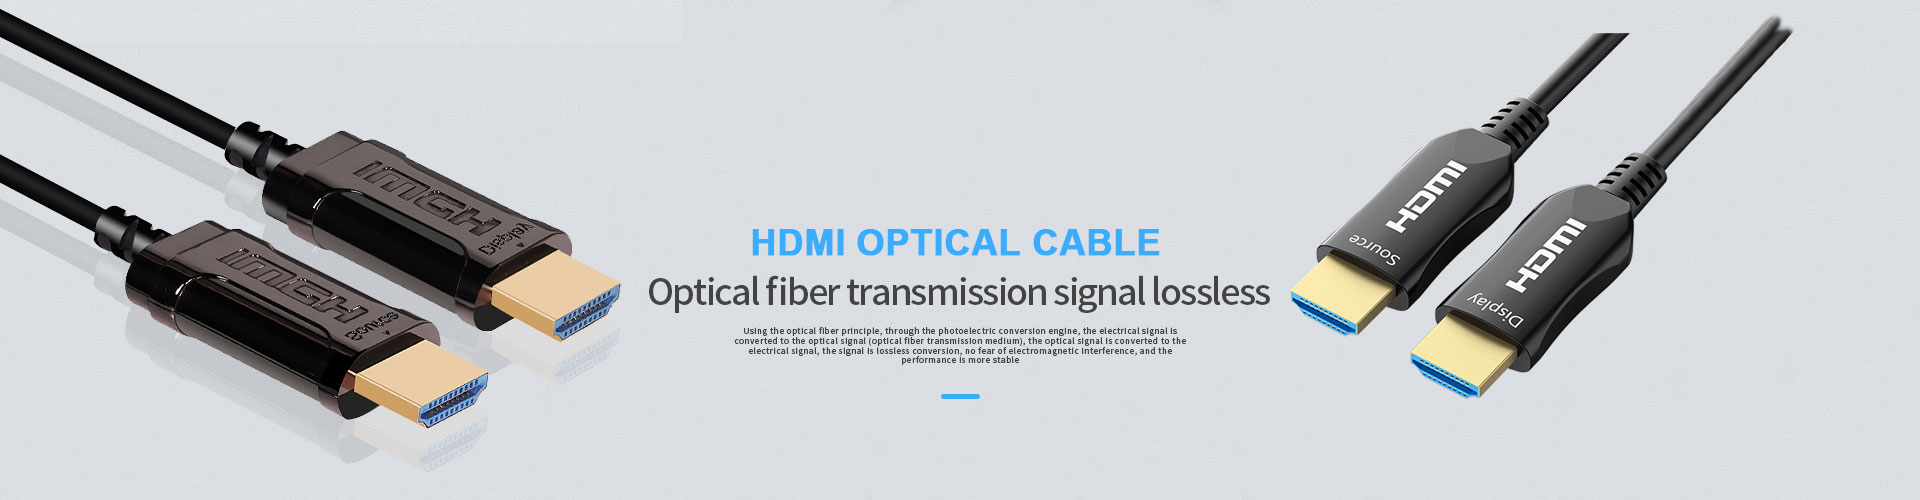 张掖Fiber HDMI